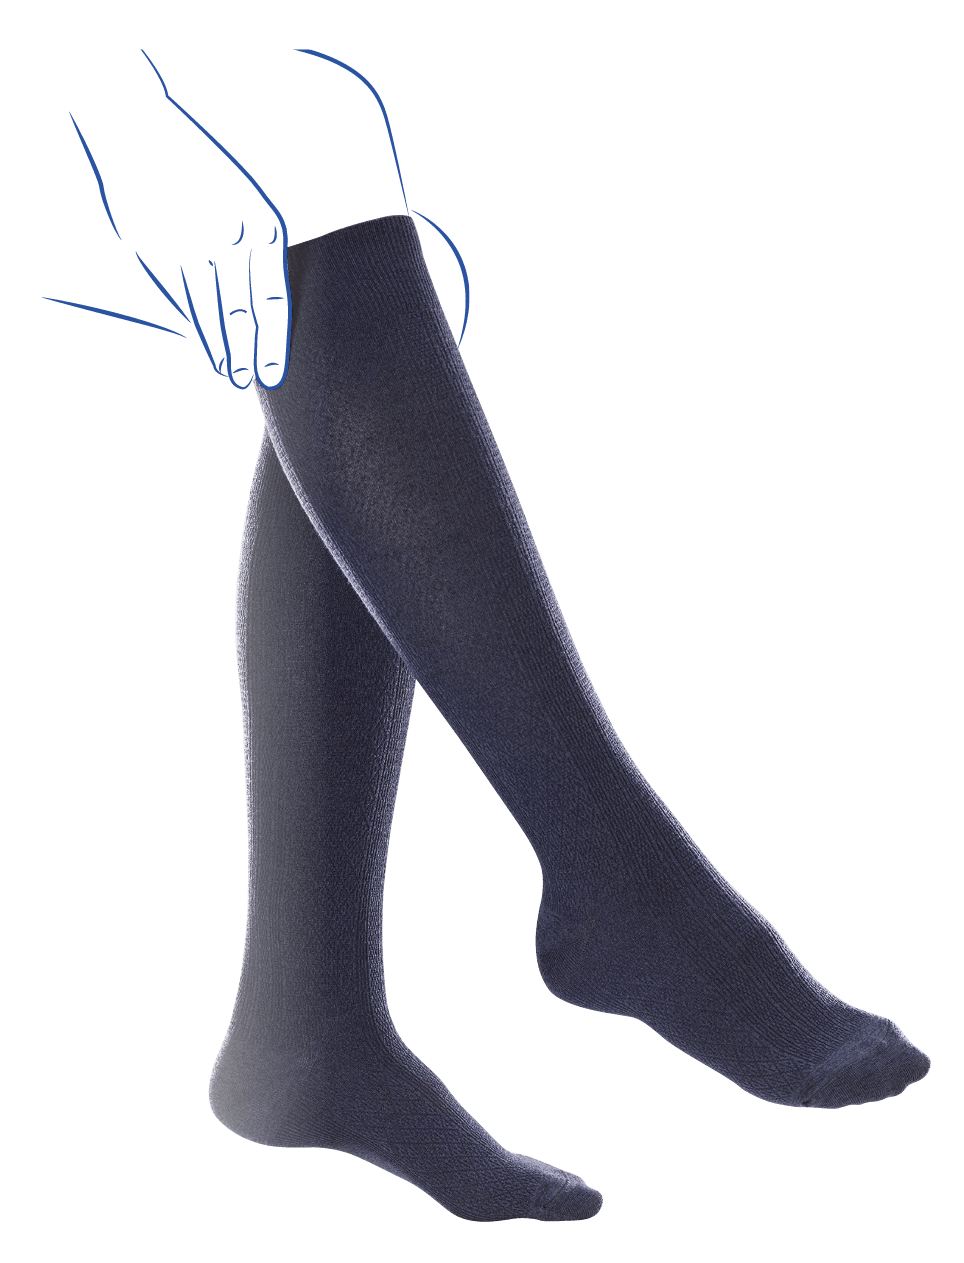 Chaussettes de contention femme classe 2 Thuasne Venoflex Fast Coton